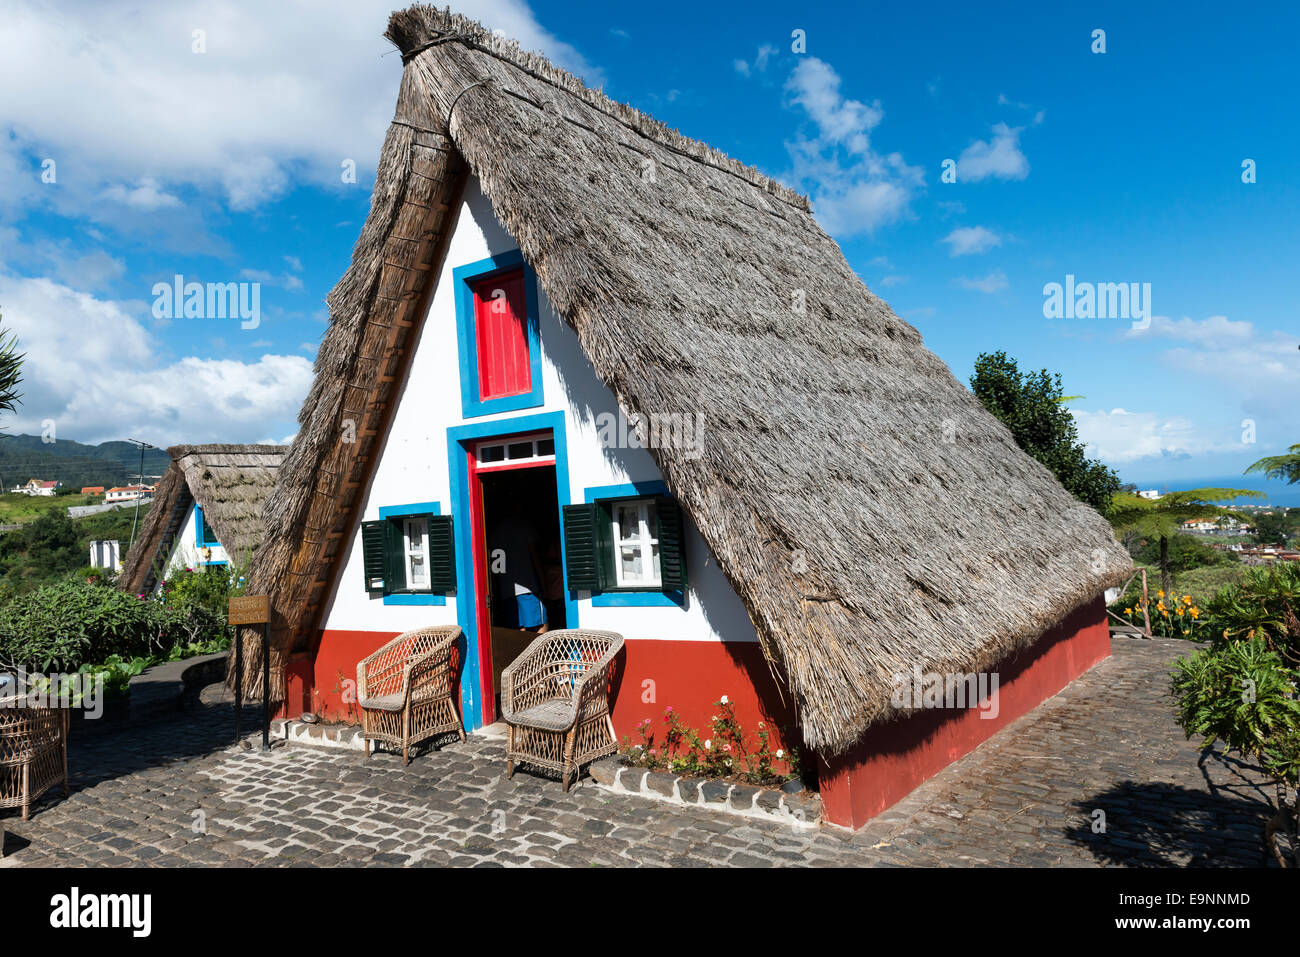 Casa Tradizionale, Santana, Madera - Isole Canarie Foto Stock